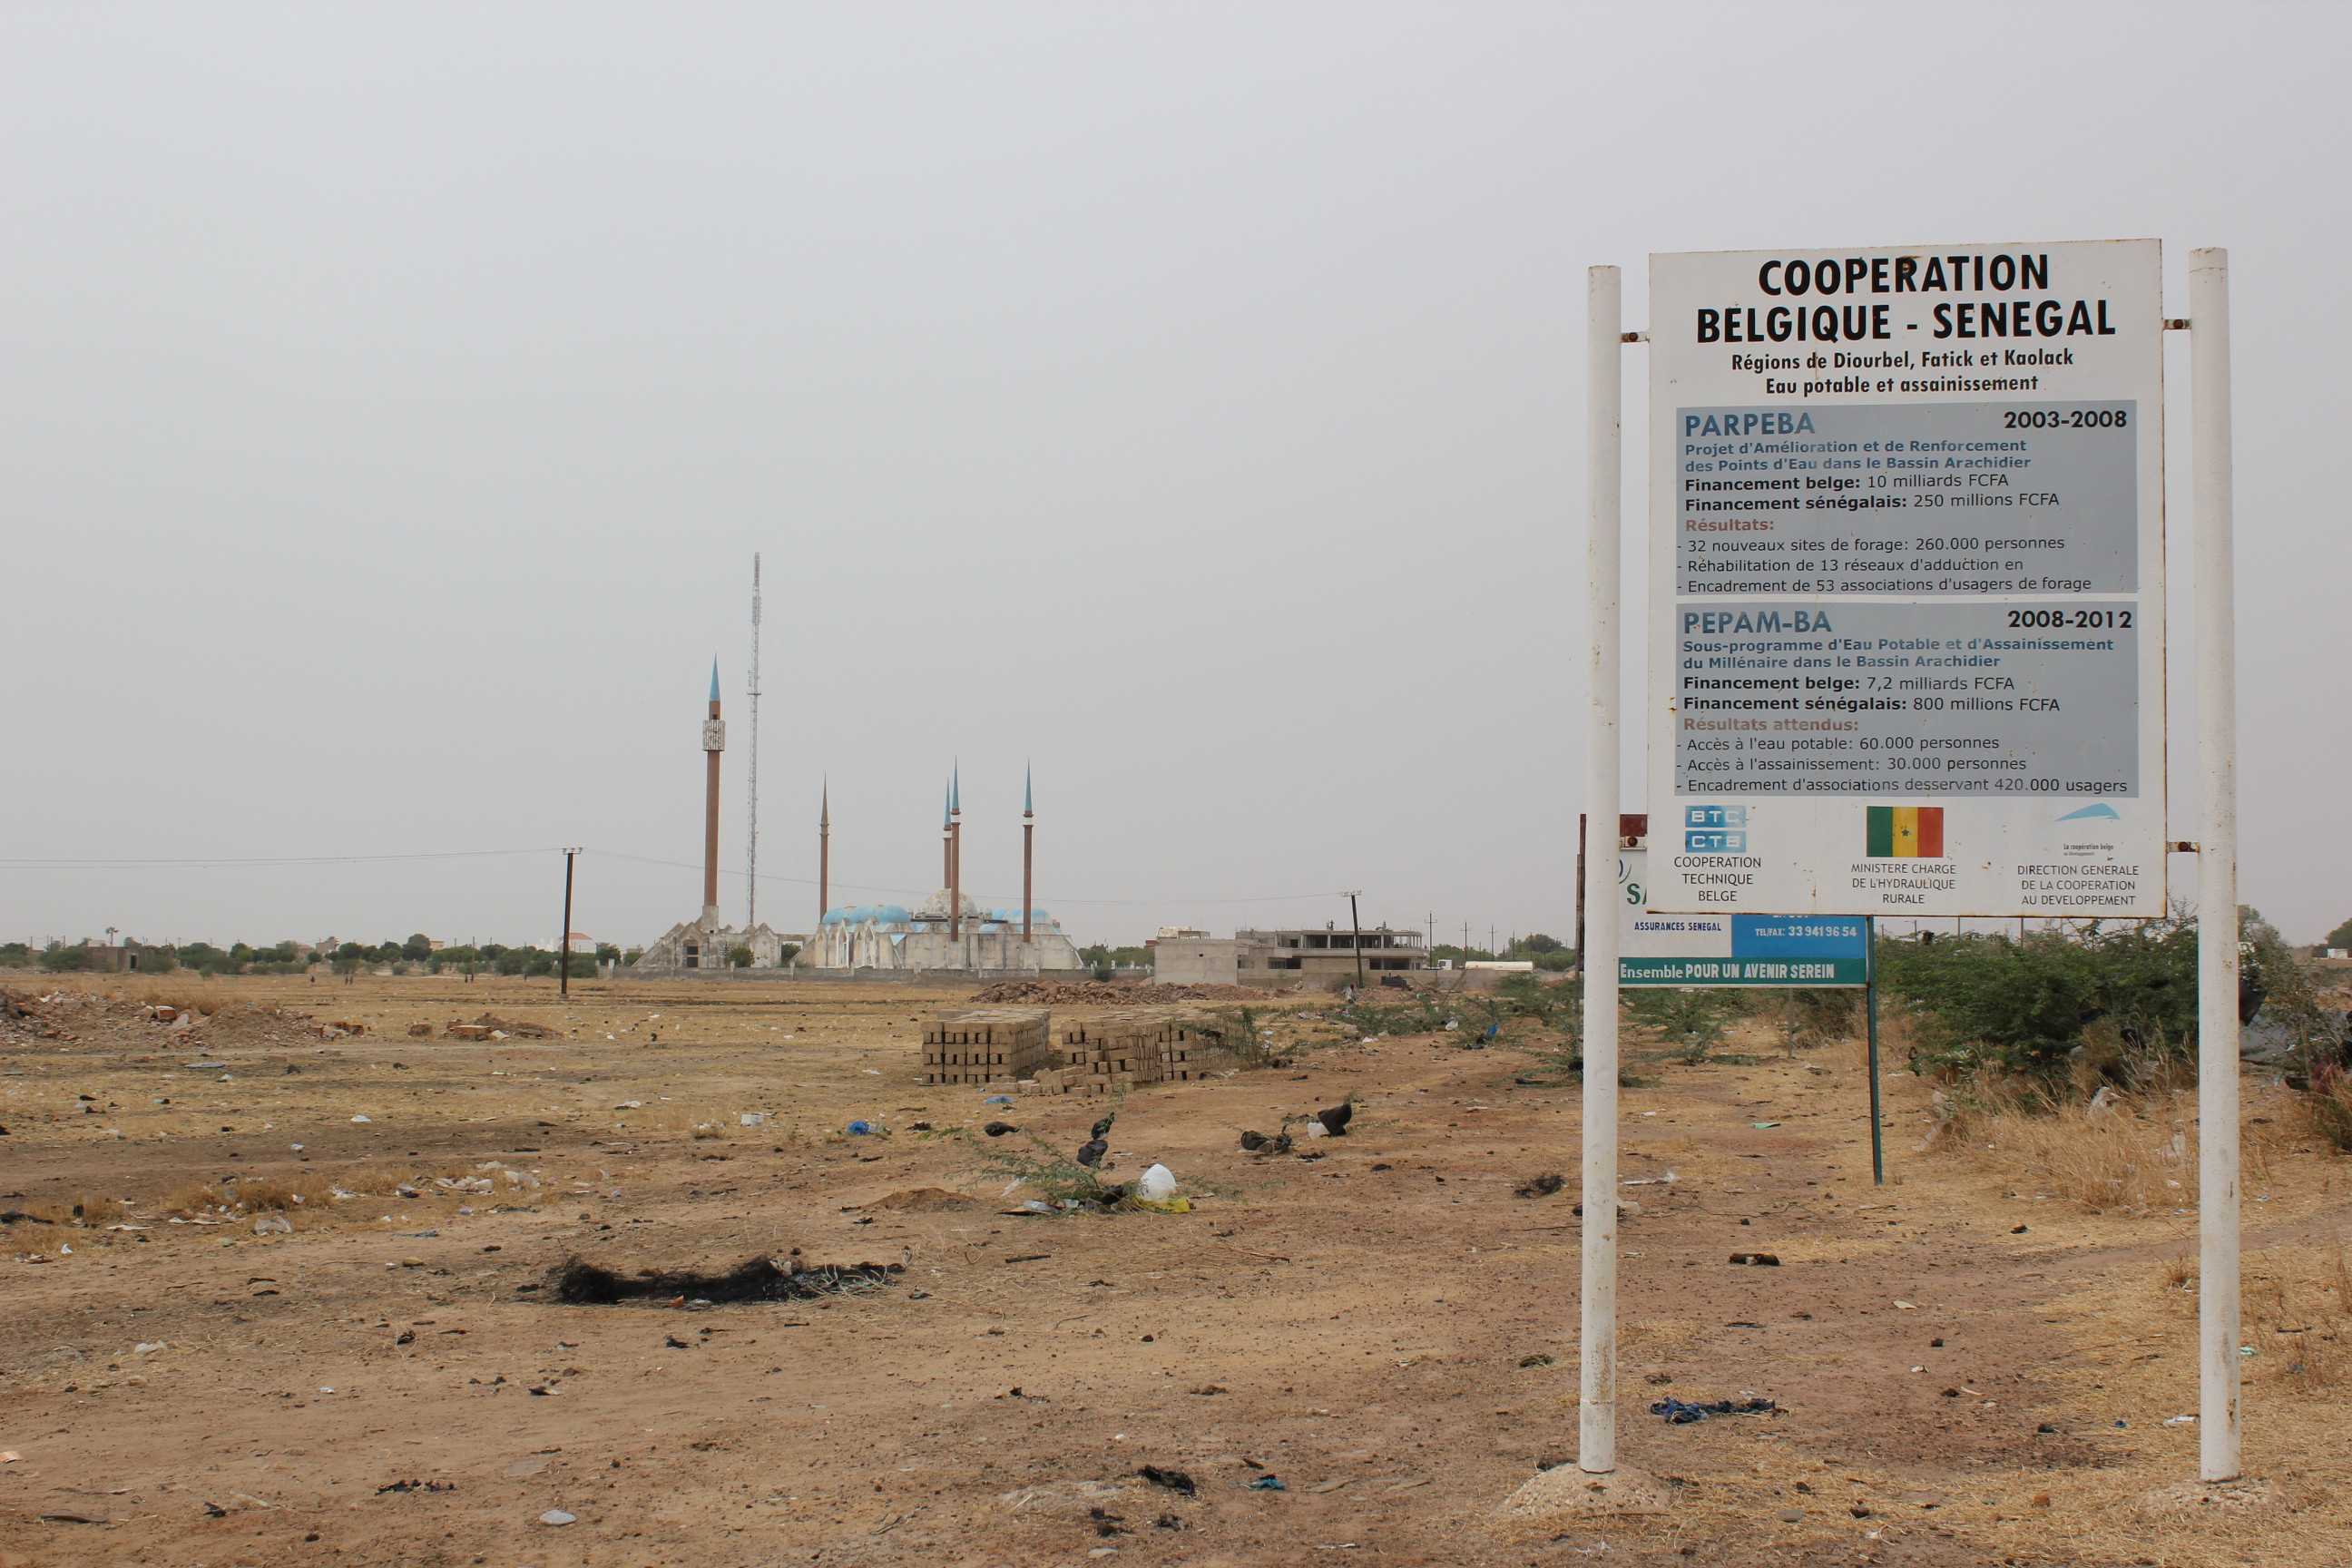 Terwijl we in België Leopold van zijn sokkel slaan, gaat de kolonisering van de publieke ruimte in Senegal onopgemerkt verder